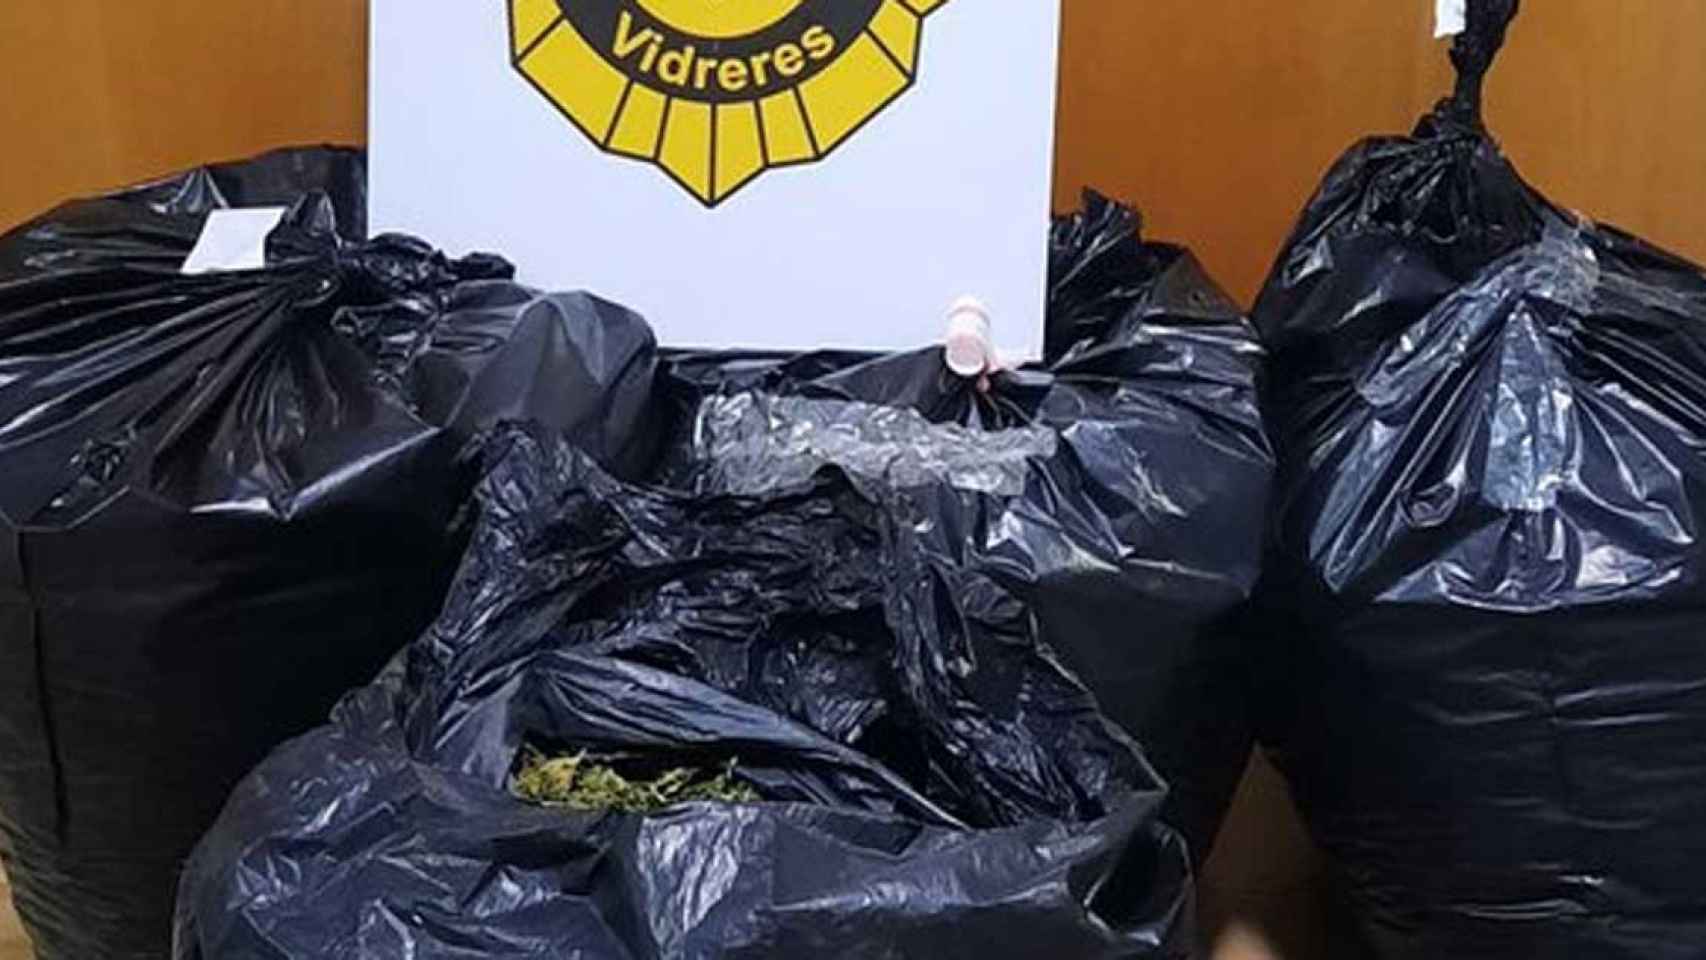 Bolsas de basura encontradas en Vidreres con marihuana en su interior / @ajvidreres (TWITTER)